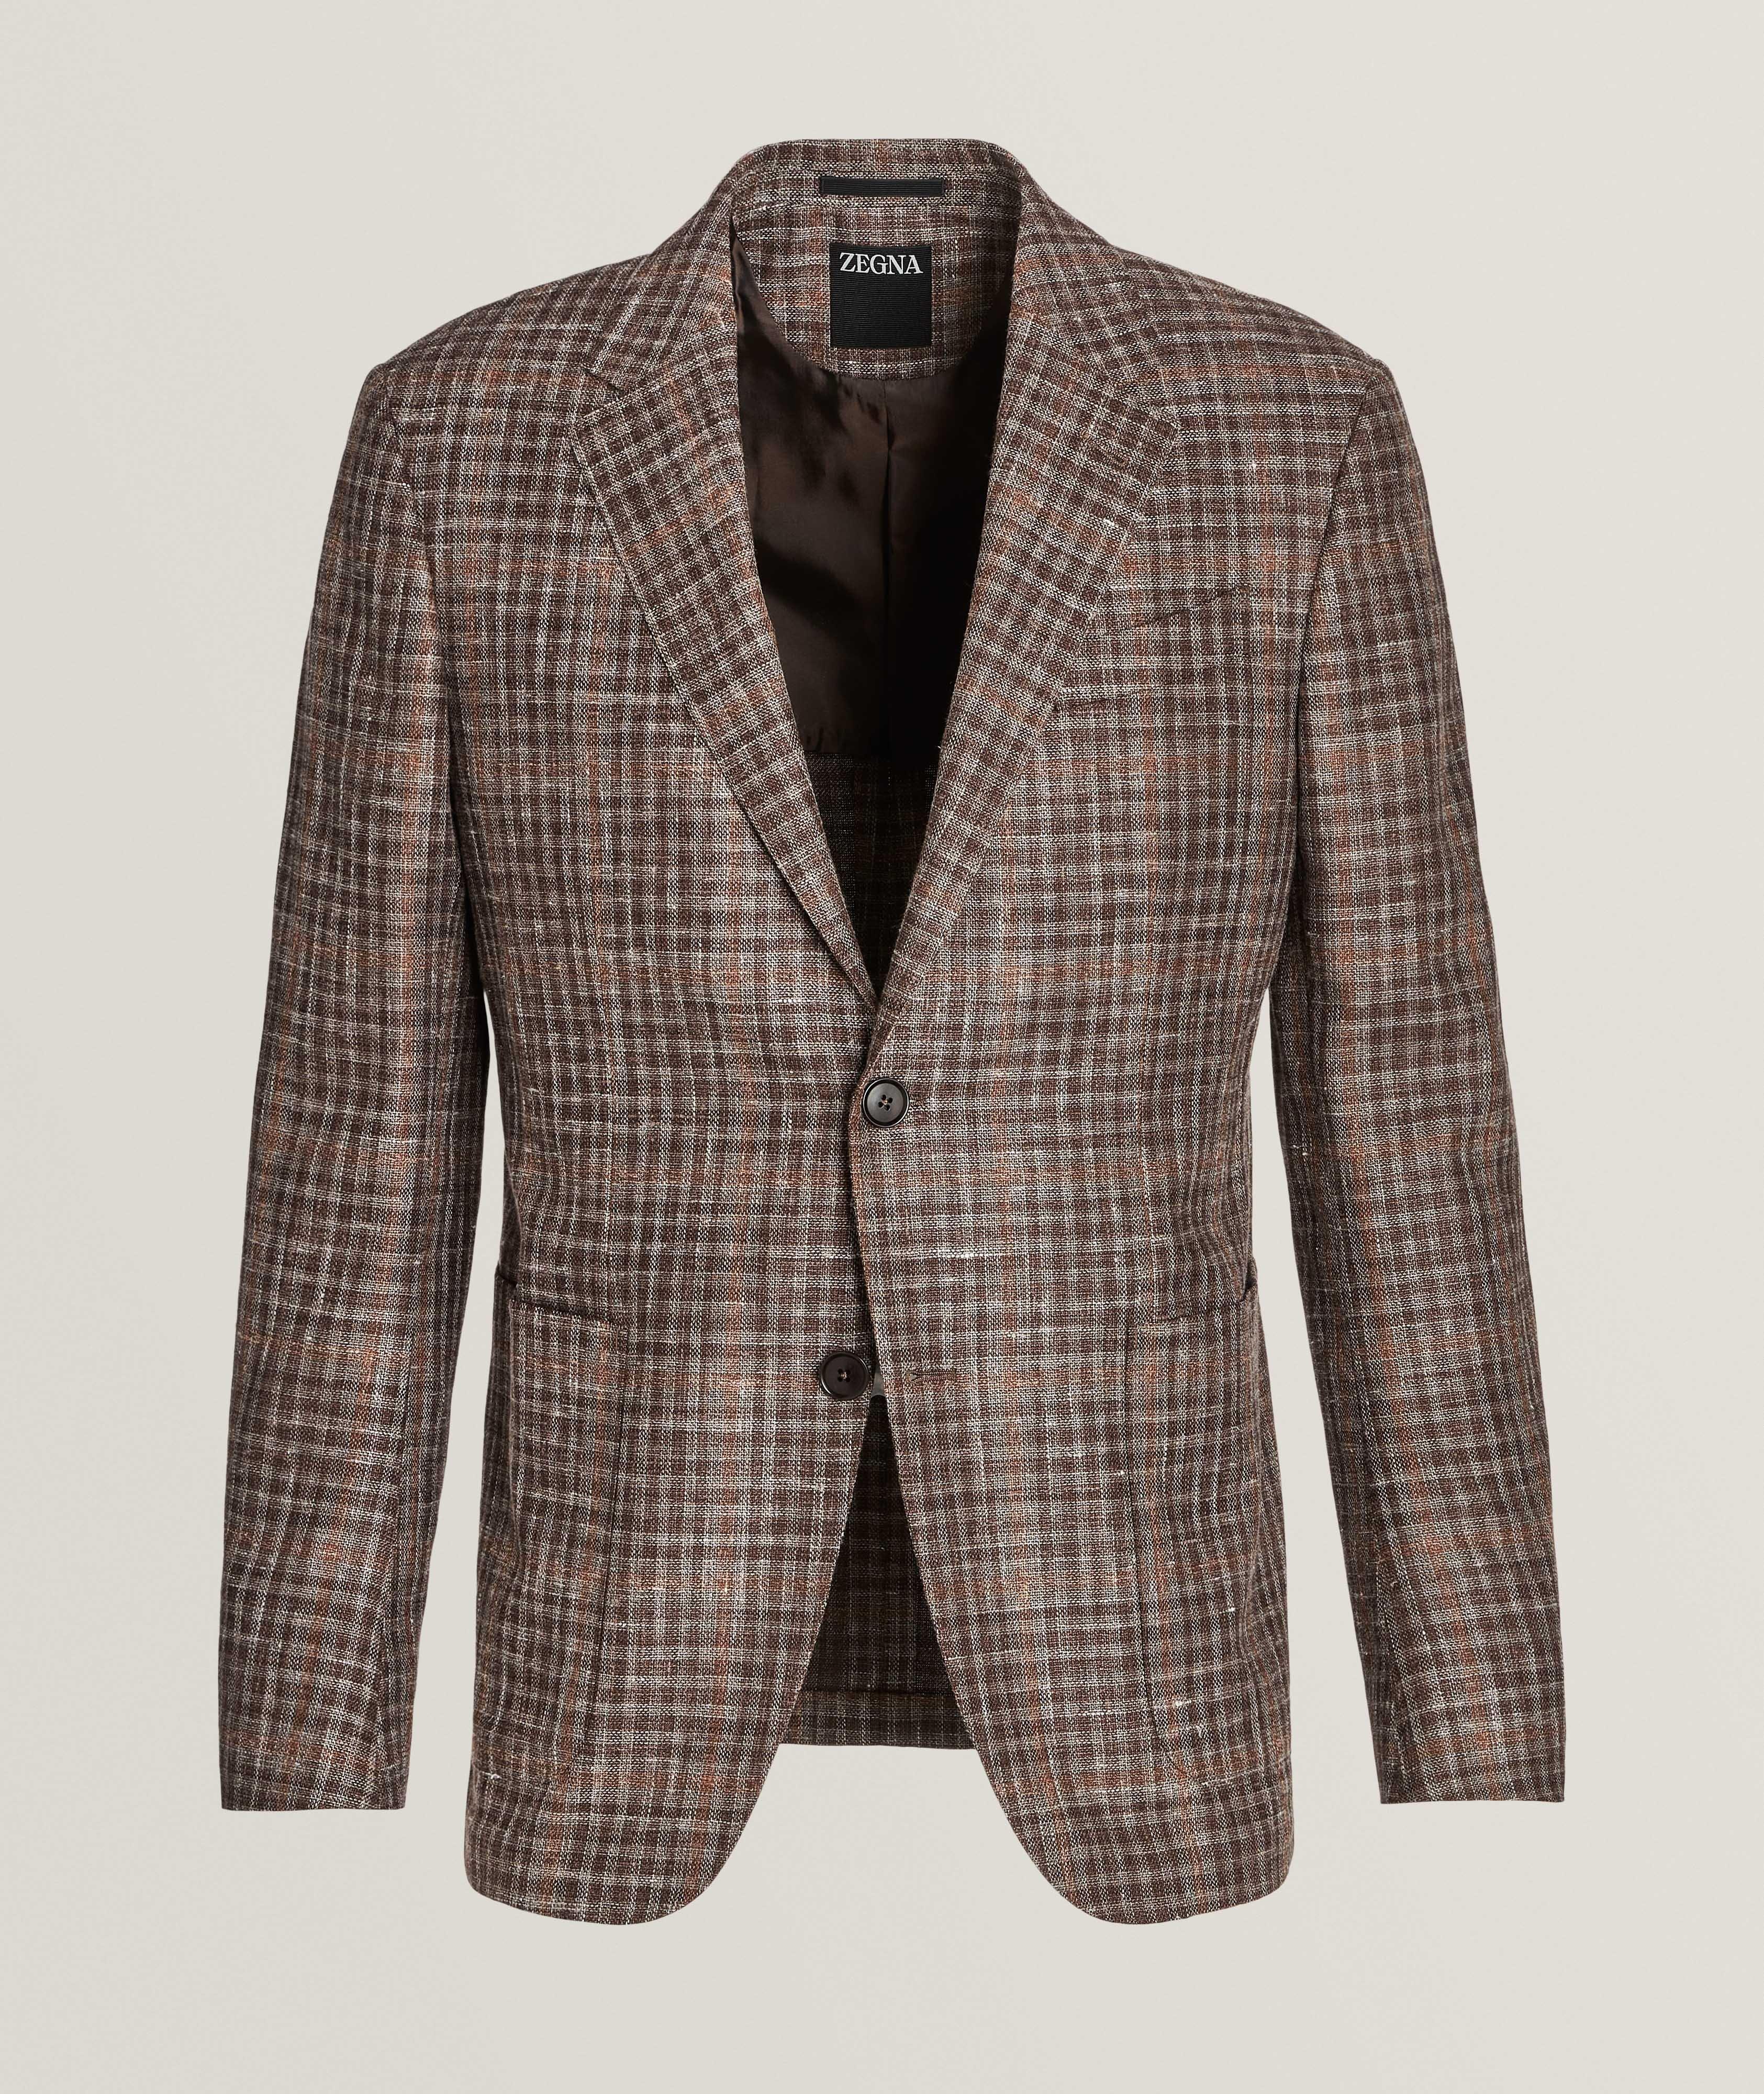 Zegna Natural Checkered Wool-Blend Sport Jacket